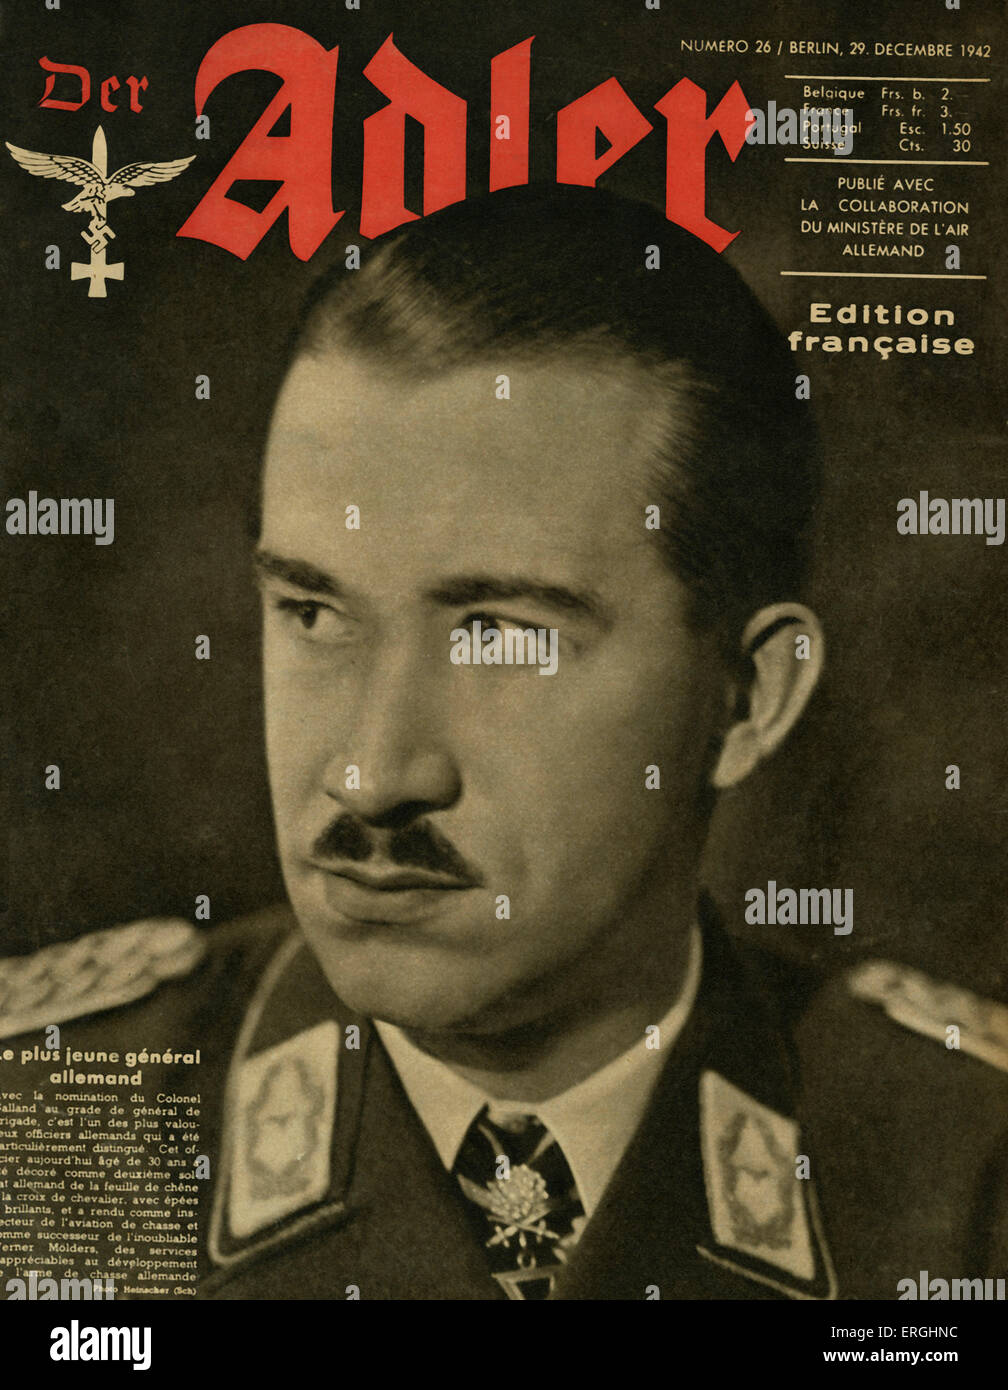 Der Adler, magazine de l'air allemande (Luftwaffe) pendant la Seconde Guerre mondiale. Couvrir du 29 décembre 1942. Édition française. Montrant Banque D'Images